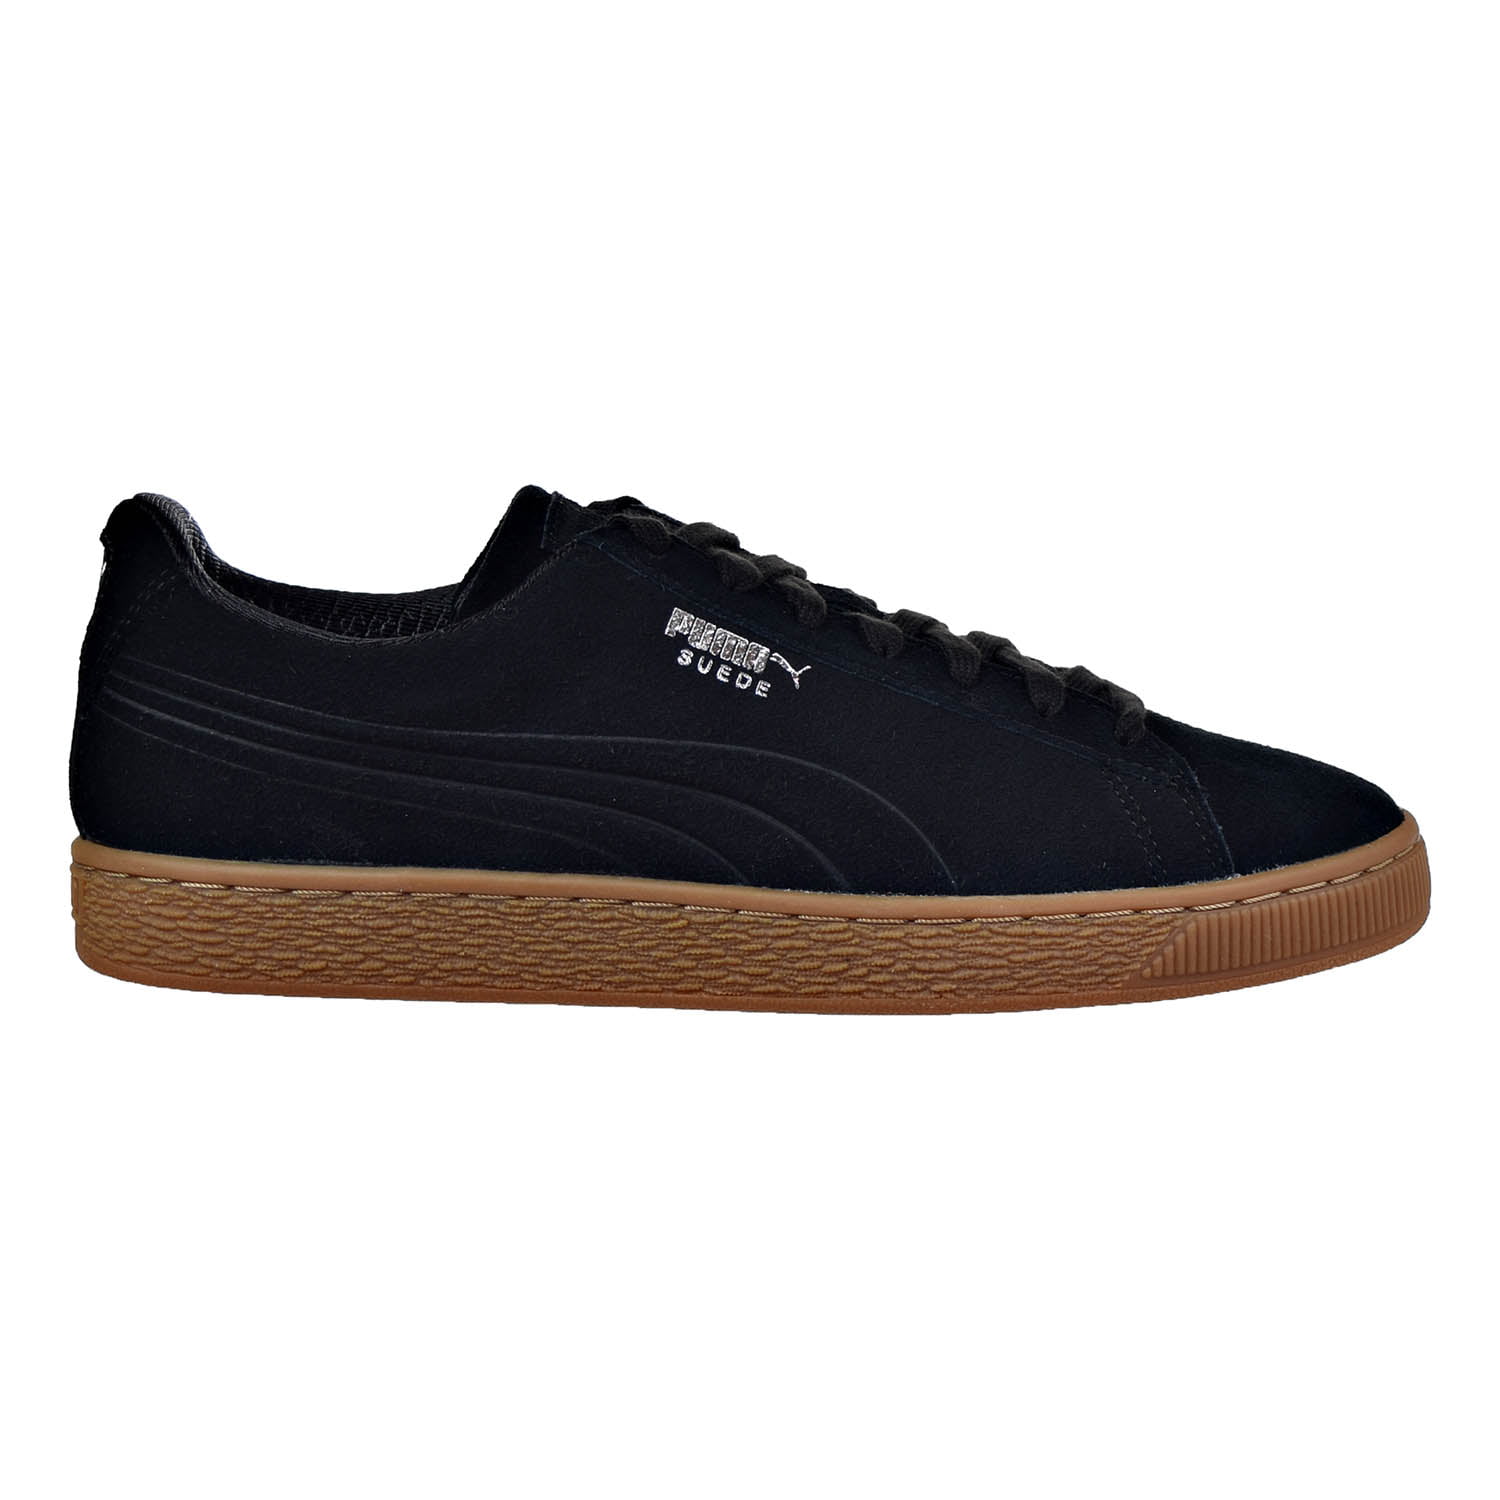 especificación Depender de máximo Puma Suede Classic Debossed Q4 Men's Shoes Puma Black/Glacier Grey 361098-02  - Walmart.com